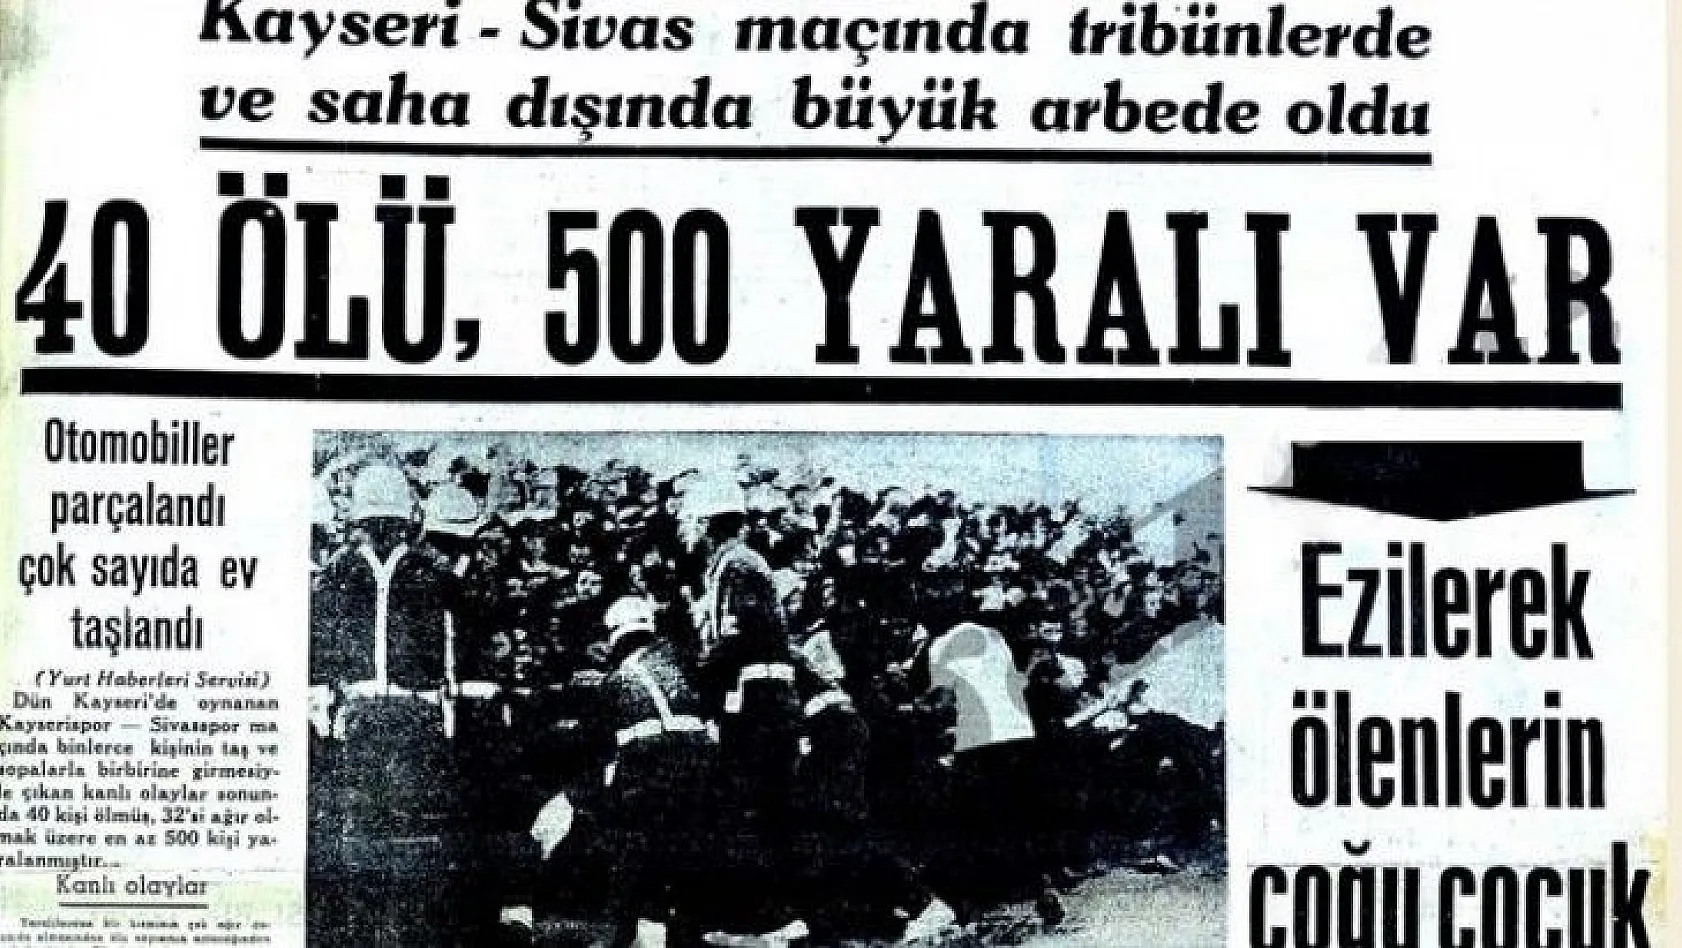 Kayseri'de yaşanan  ve futbol tarihinin en acı olayları arasında yer alan o maçı anlattı!